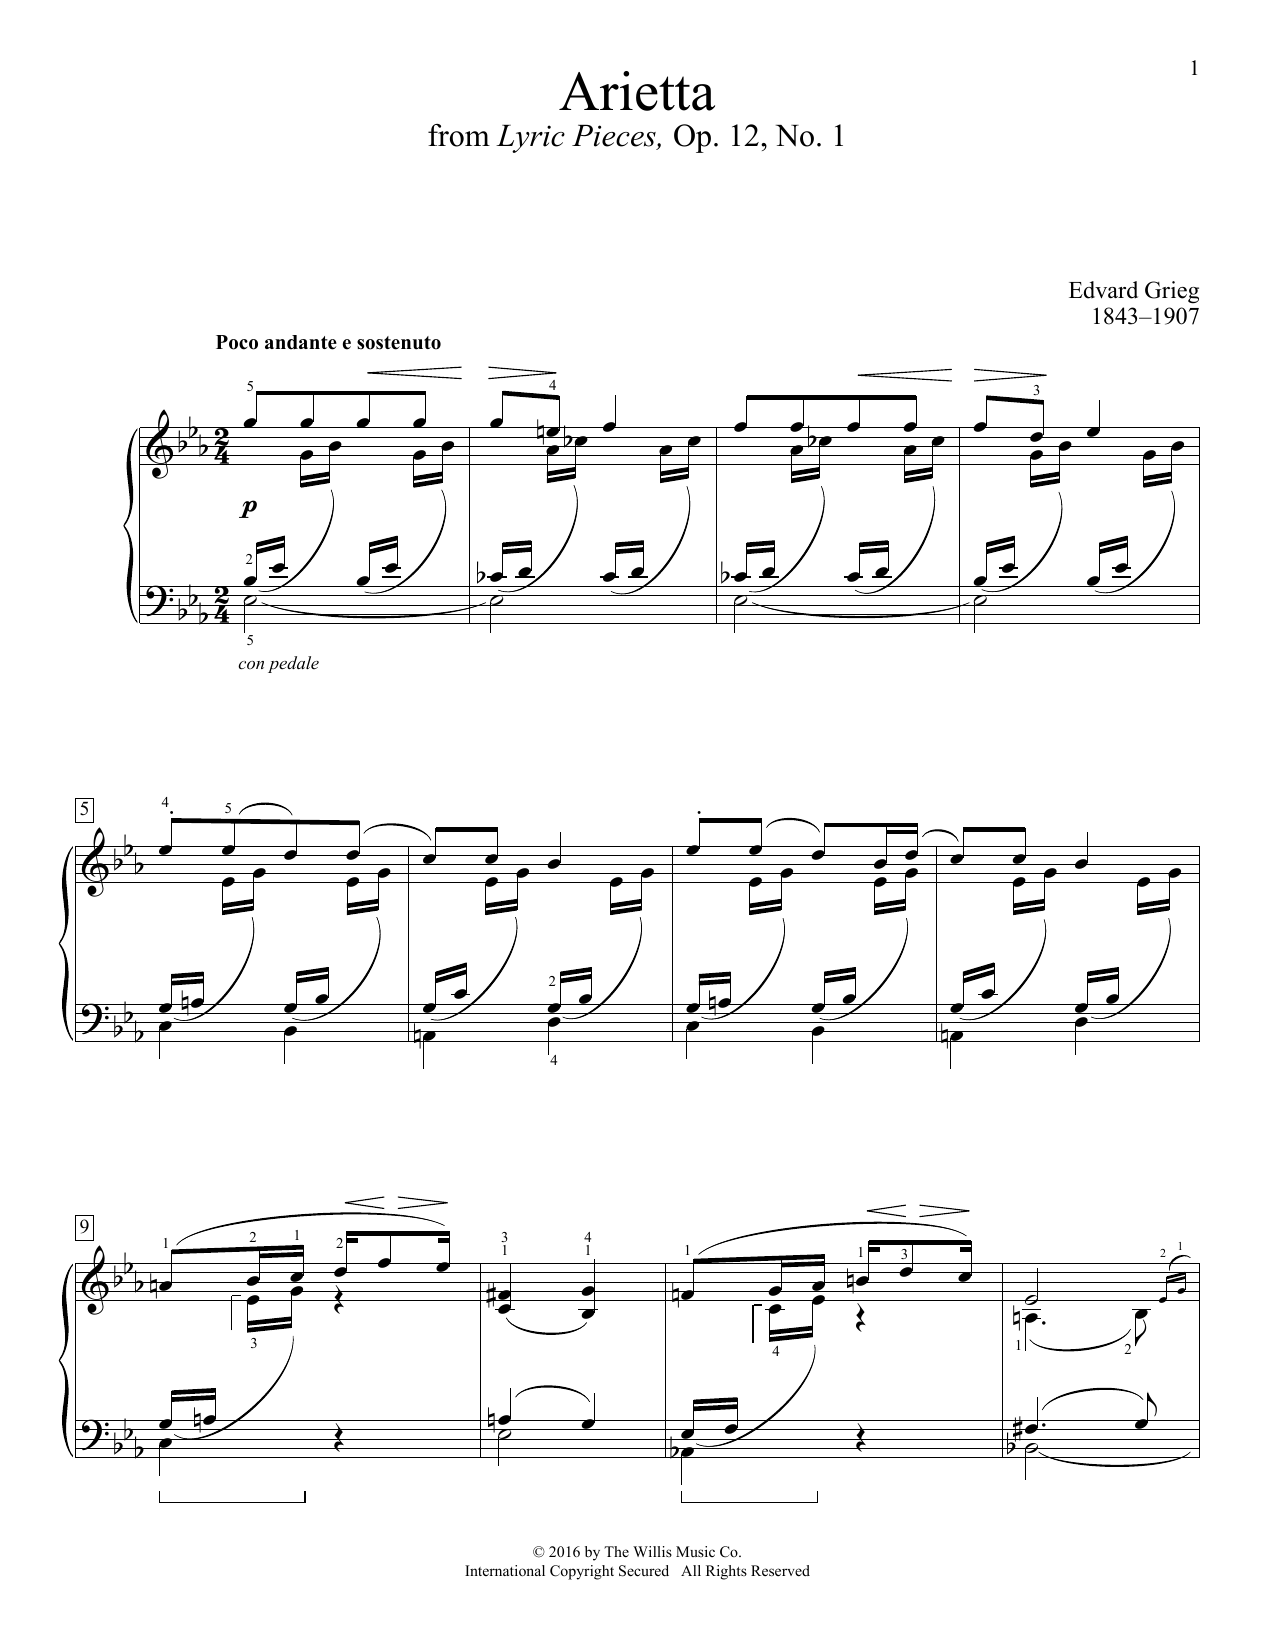 Download Edvard Grieg Arietta Sheet Music